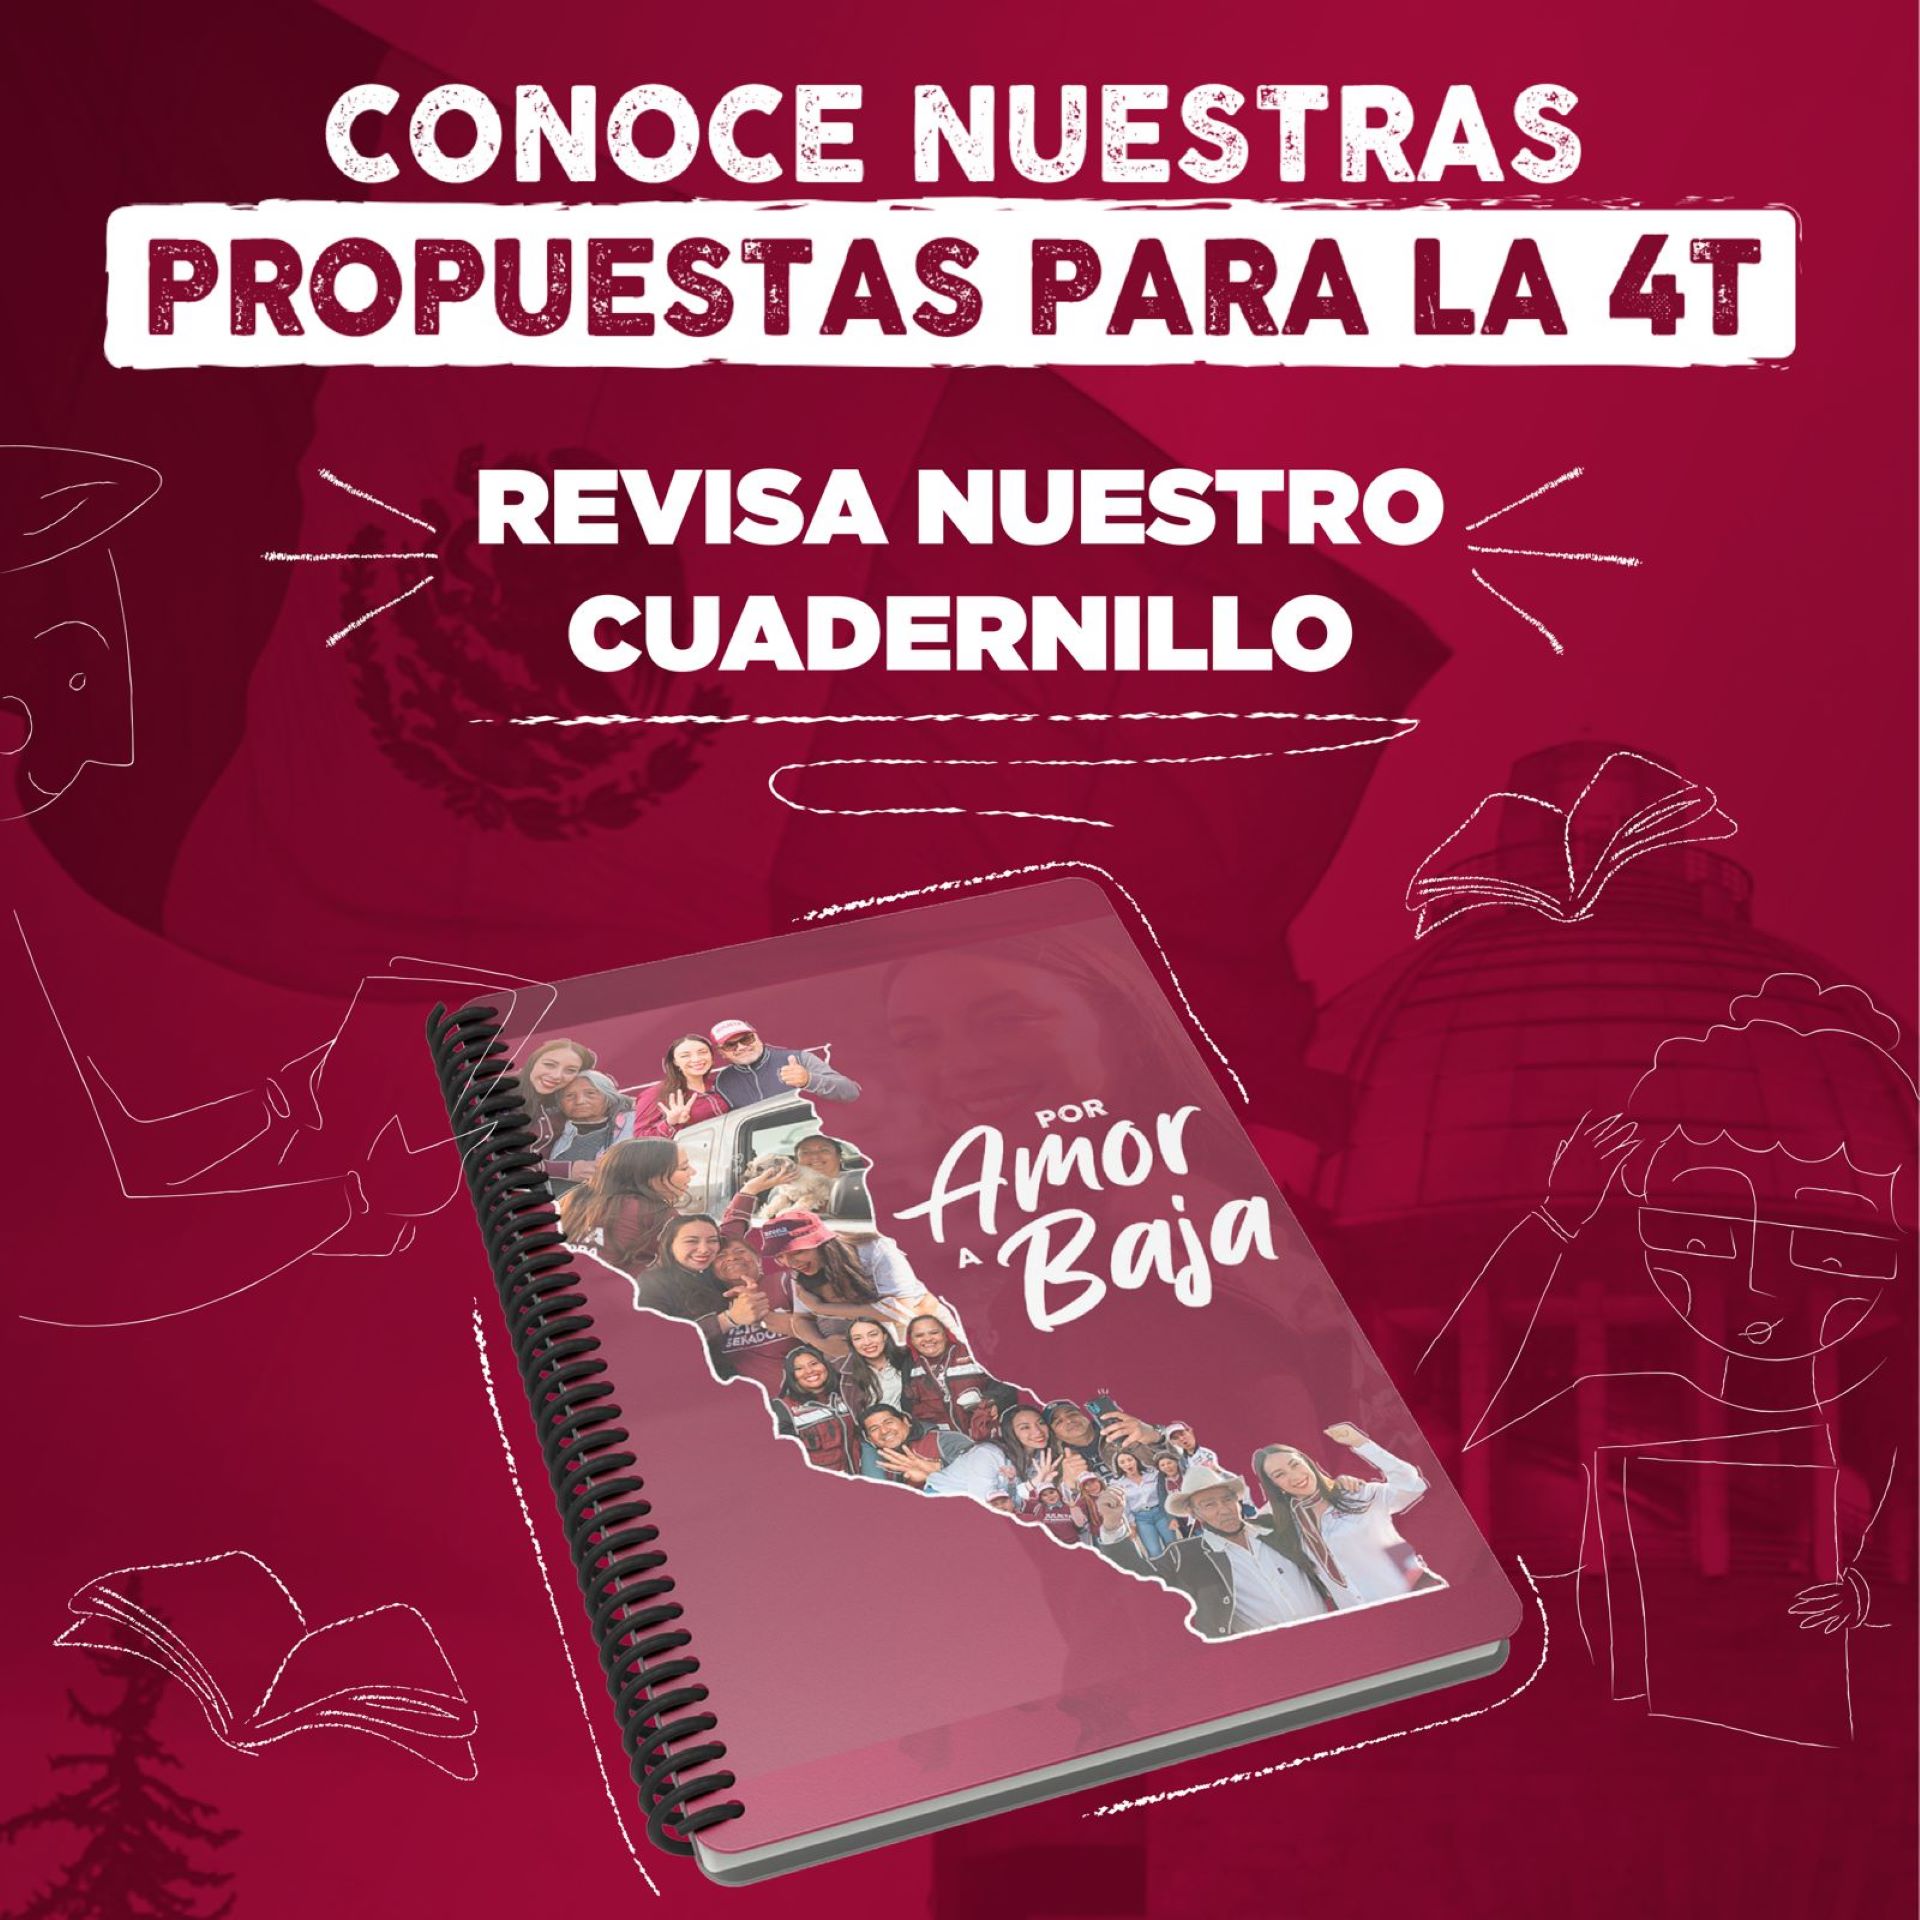 Presenta Julieta Ramírez cuadernillo “Por Amor a Baja” propuestas para el bienestar de BC